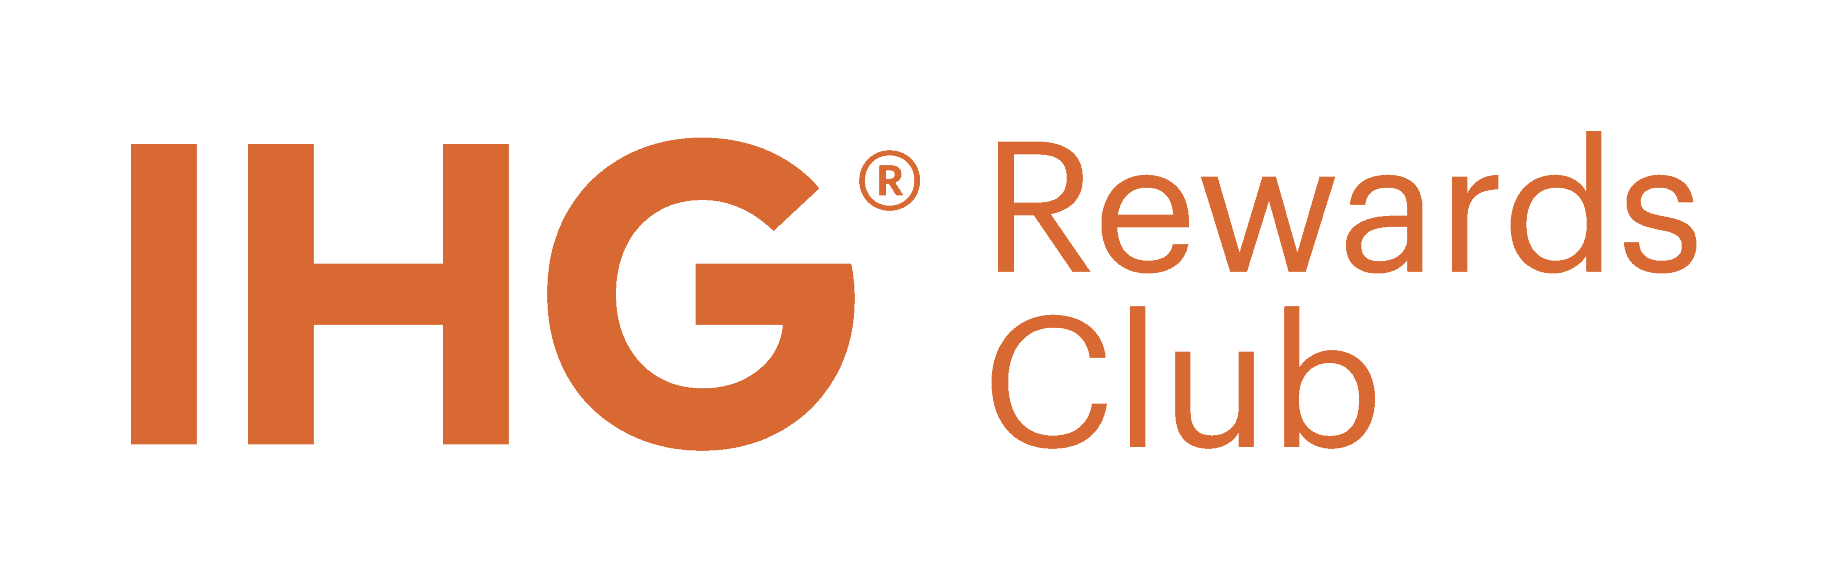 IHG Rewards Club Guide 2020 